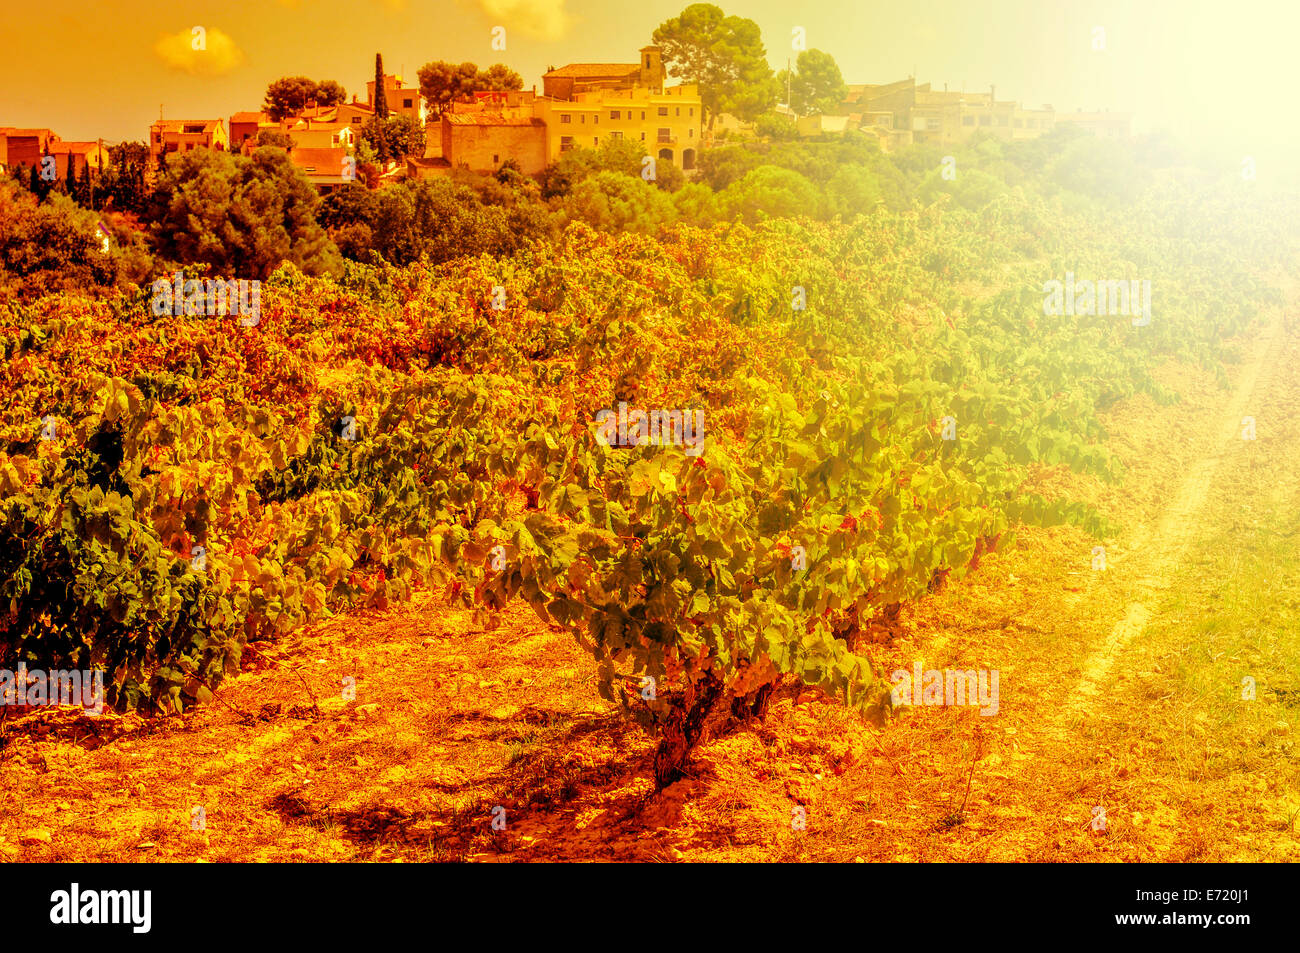 Detalle de un viñedo en un país mediterráneo iluminado por la luz de la tarde Foto de stock